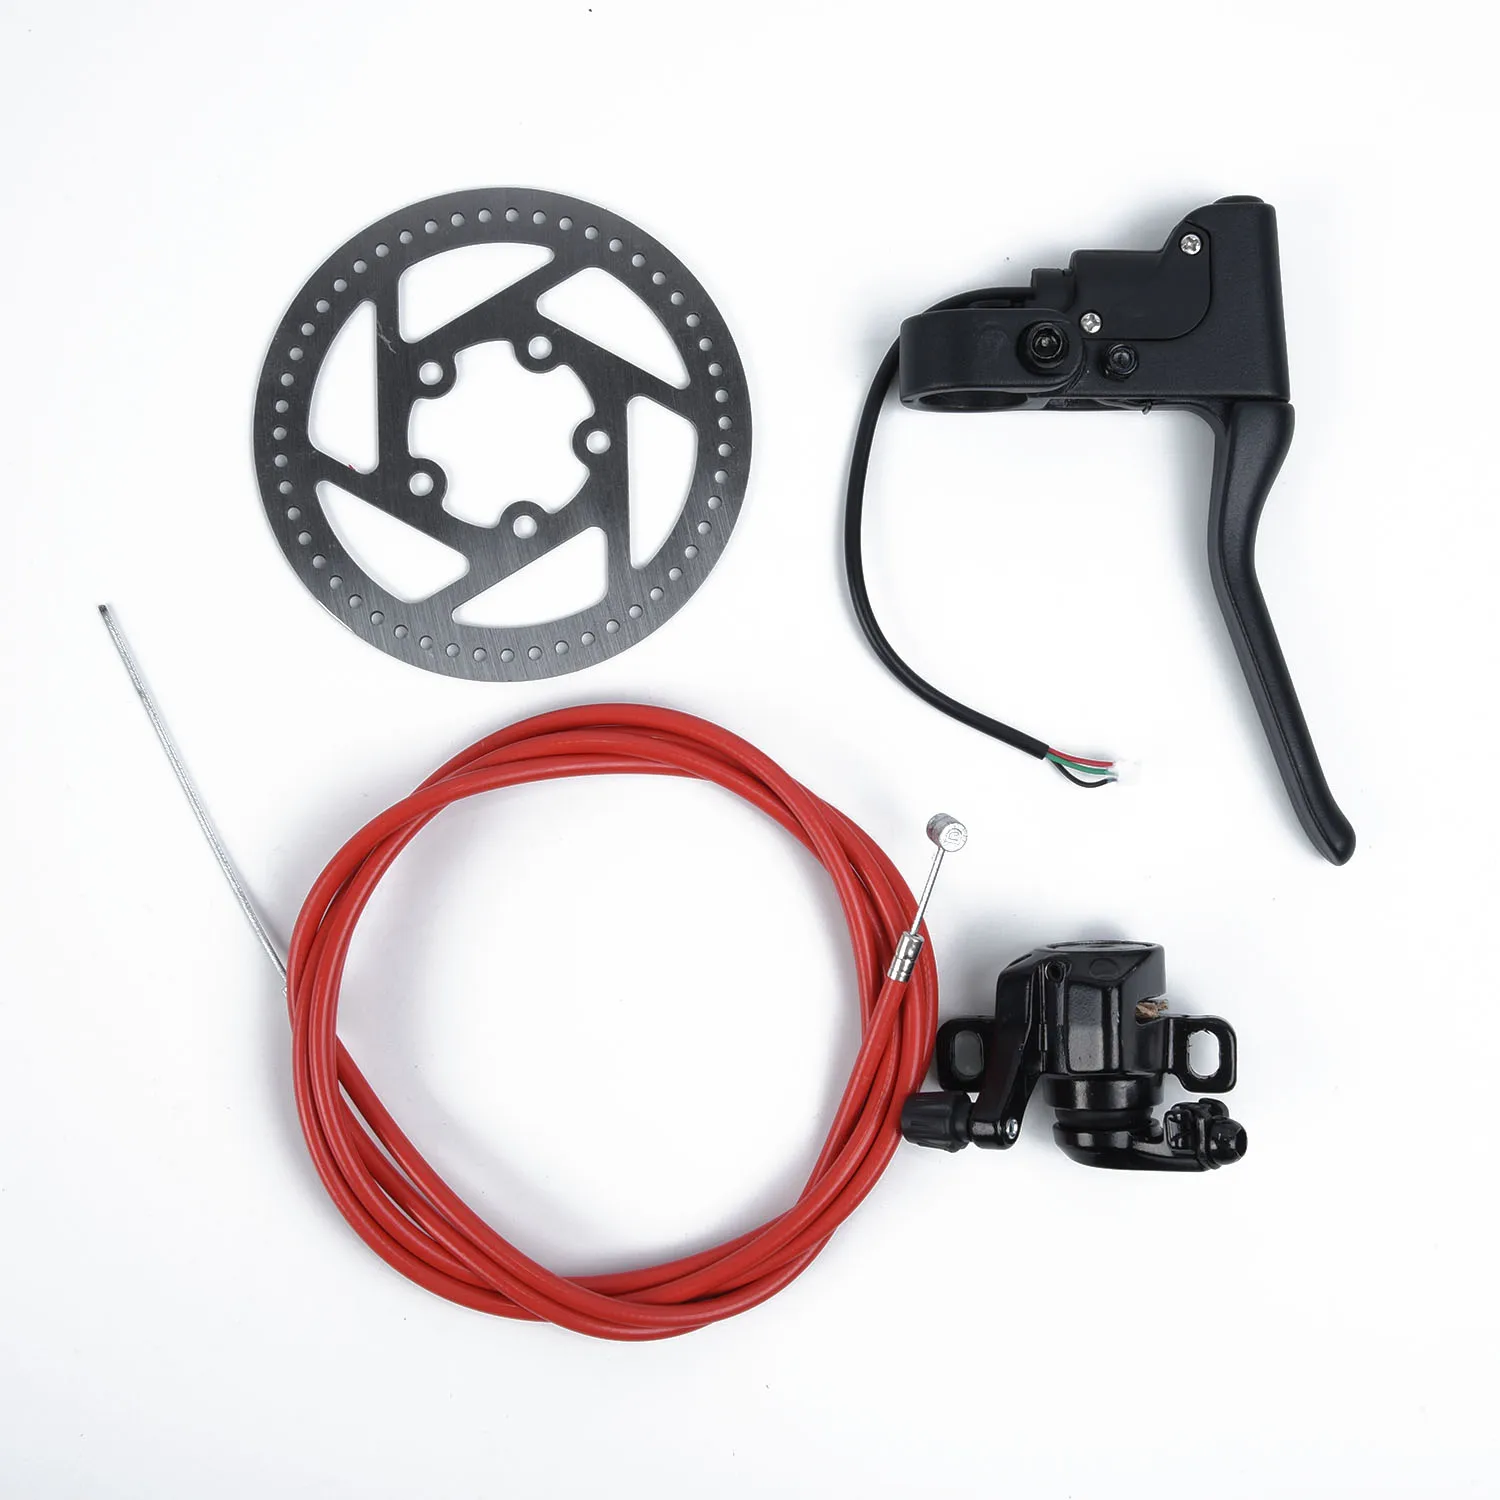 Замена тормозного кабеля для Xiaomi Mi M365 электрический скутер аксессуары Запчасти